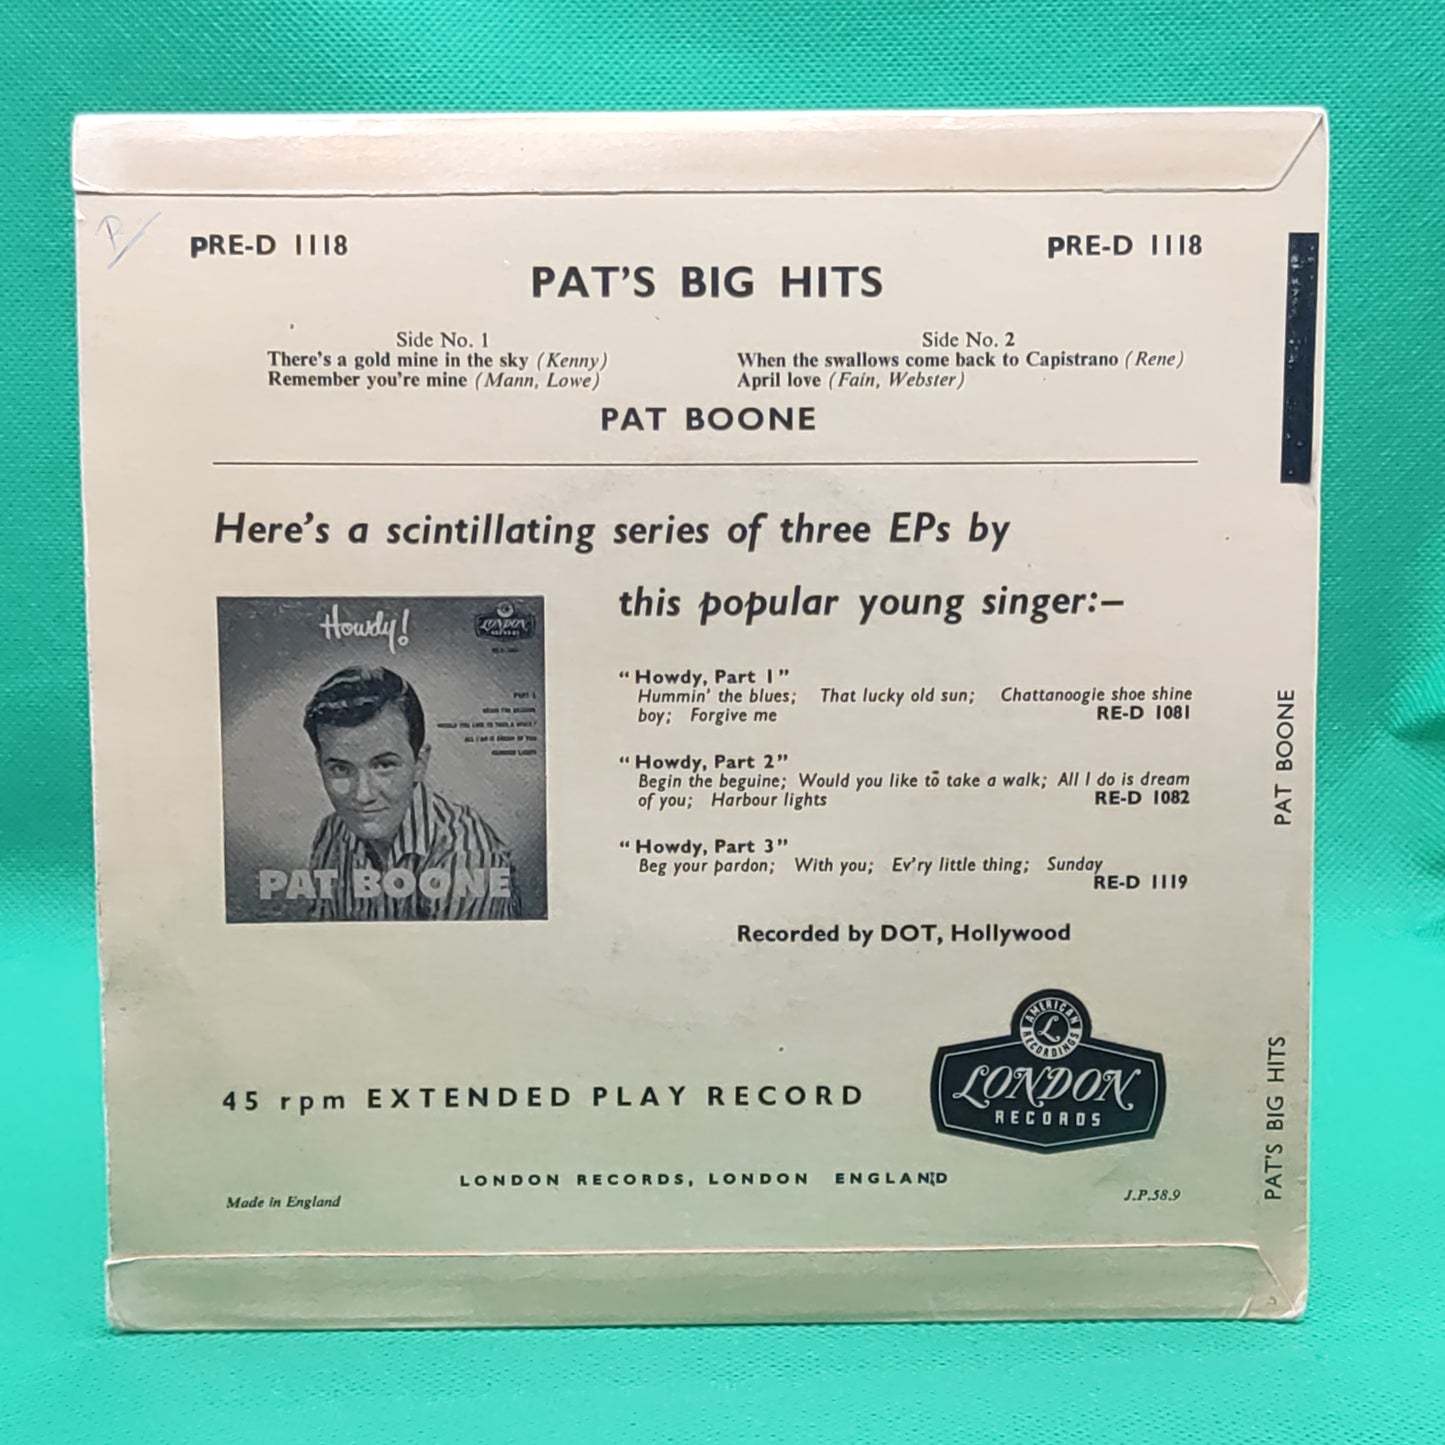 PAT BOONE - Pat's Big Hits